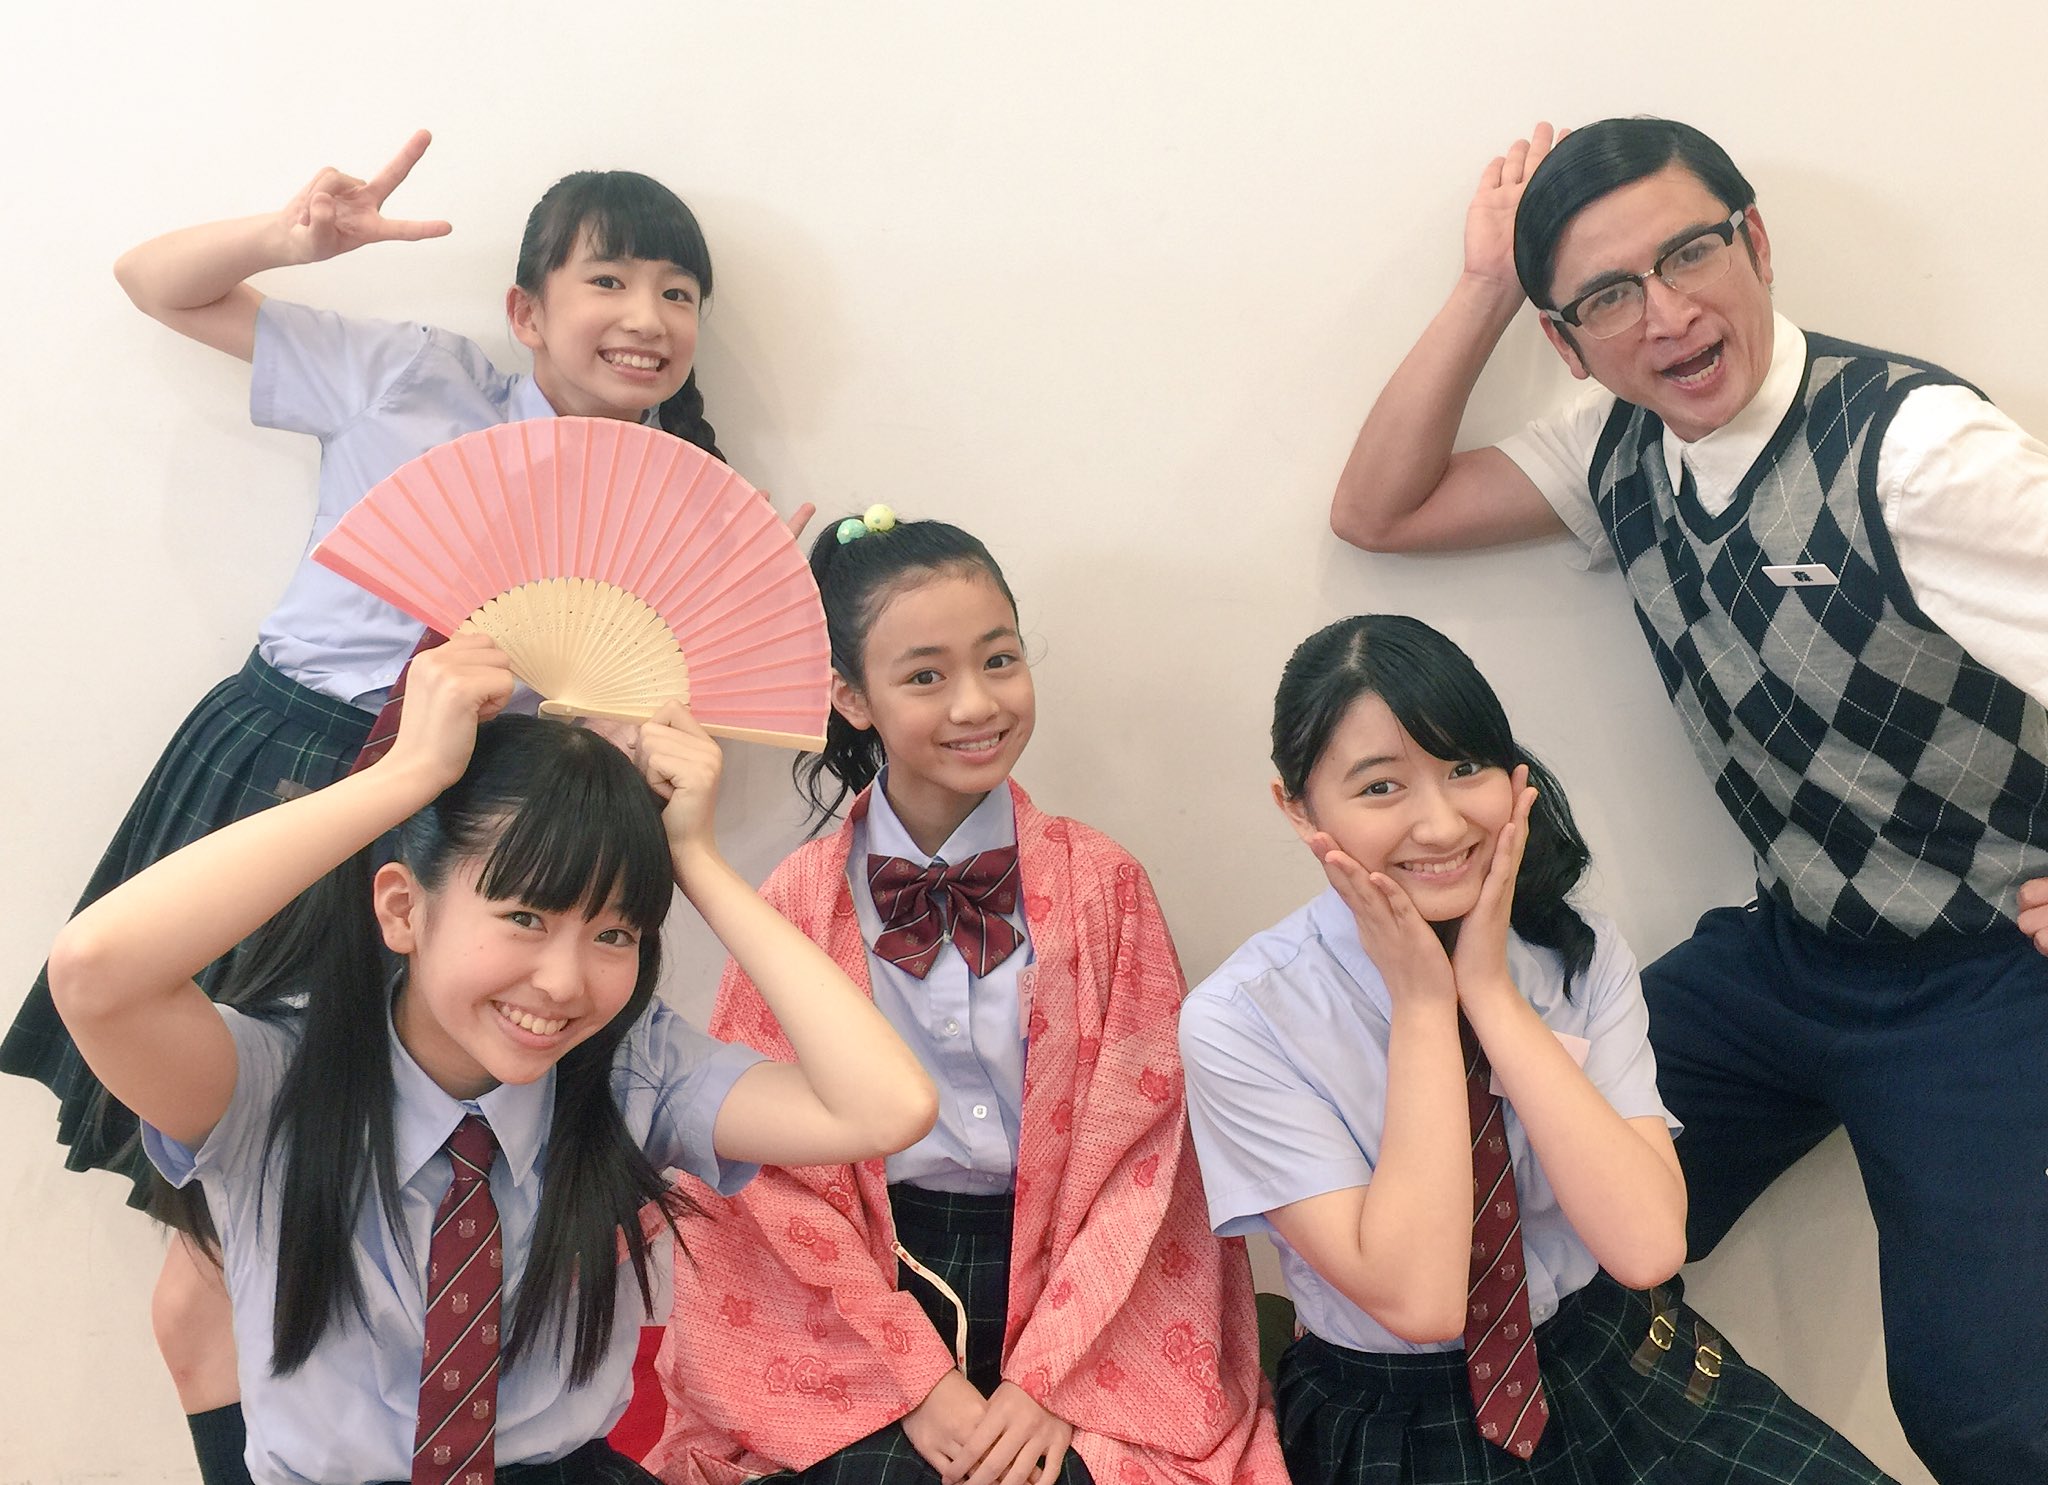 Sakura Gakuin Staff : Sakura Gakuin | さくら学院職員室 : さくら学院